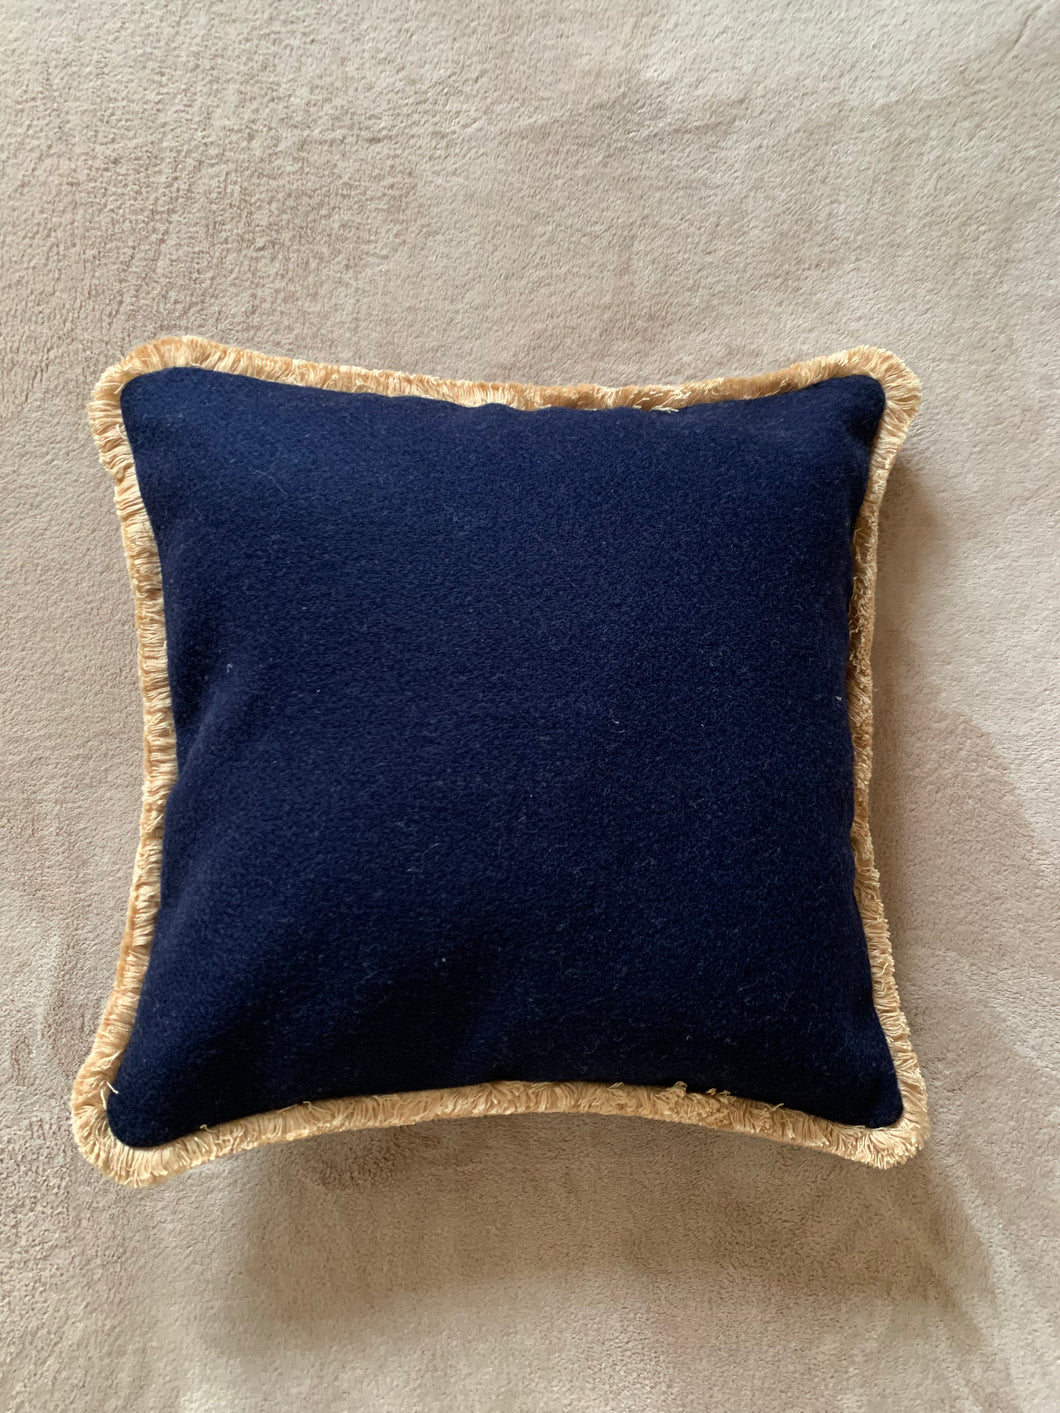 Cuscino in lana merinos blu con spazzolina oro